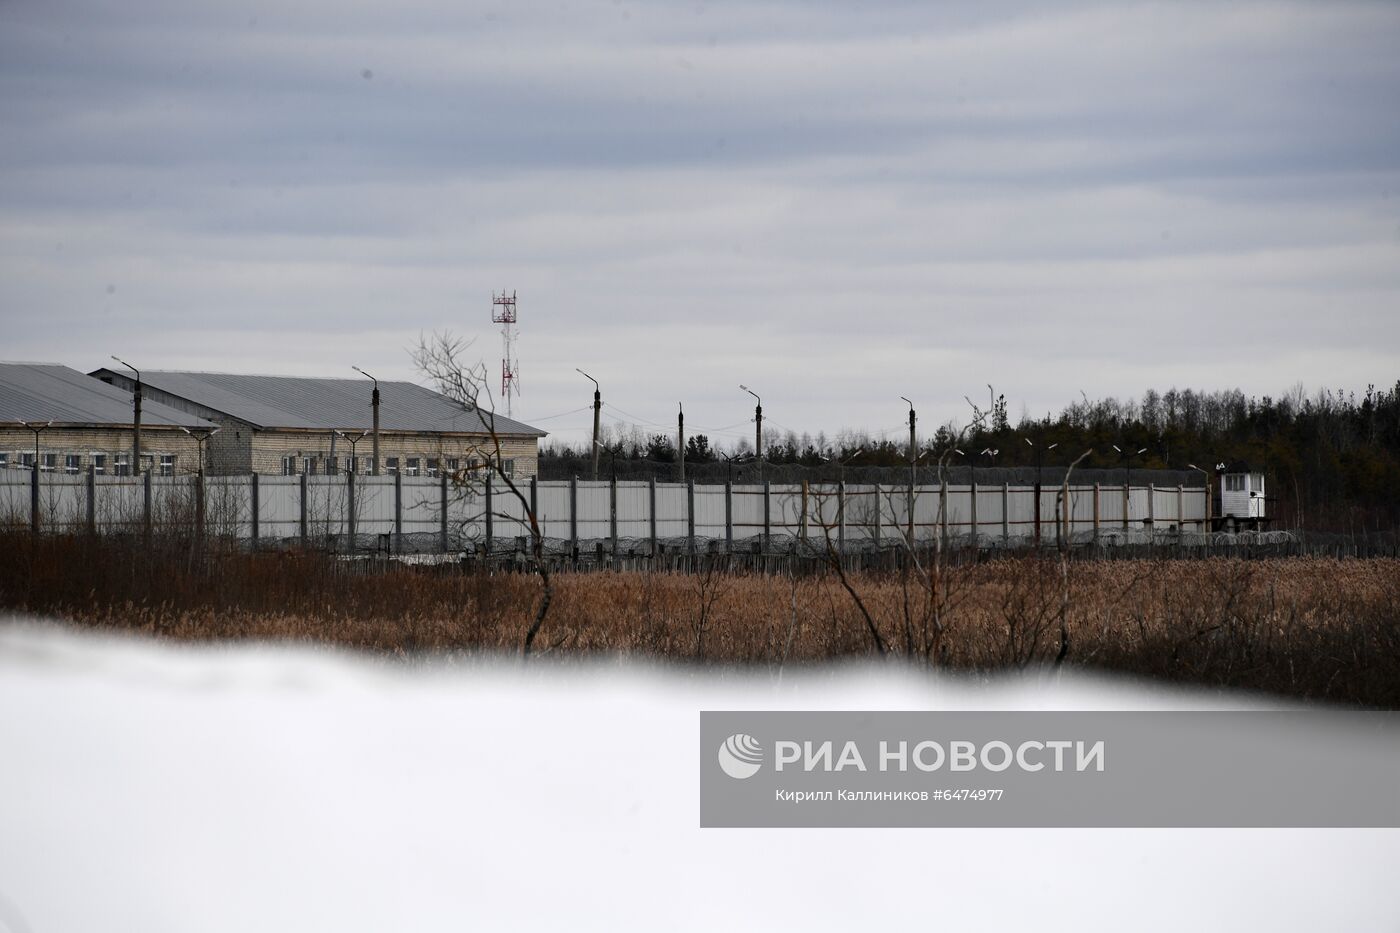 Исправительная колония ИК-2, где, возможно, будет отбывать наказание А. Навальный